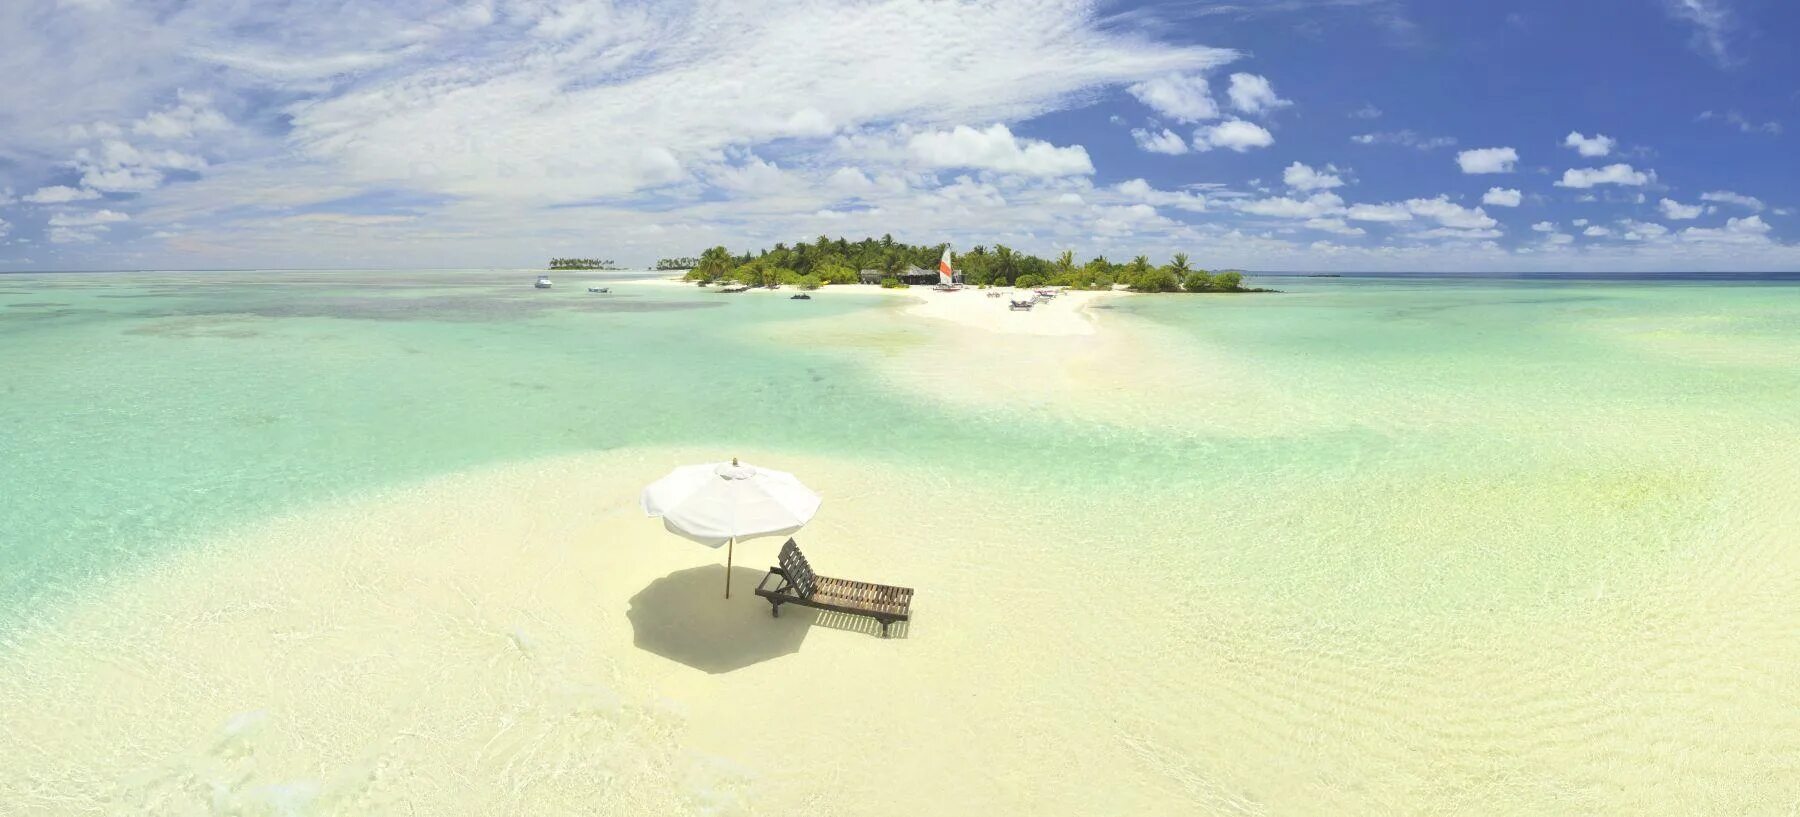 Fun island. Fun Island Resort Maldives. Мальдивы вид с пляжа рыб. Мальдивы в виде копья.